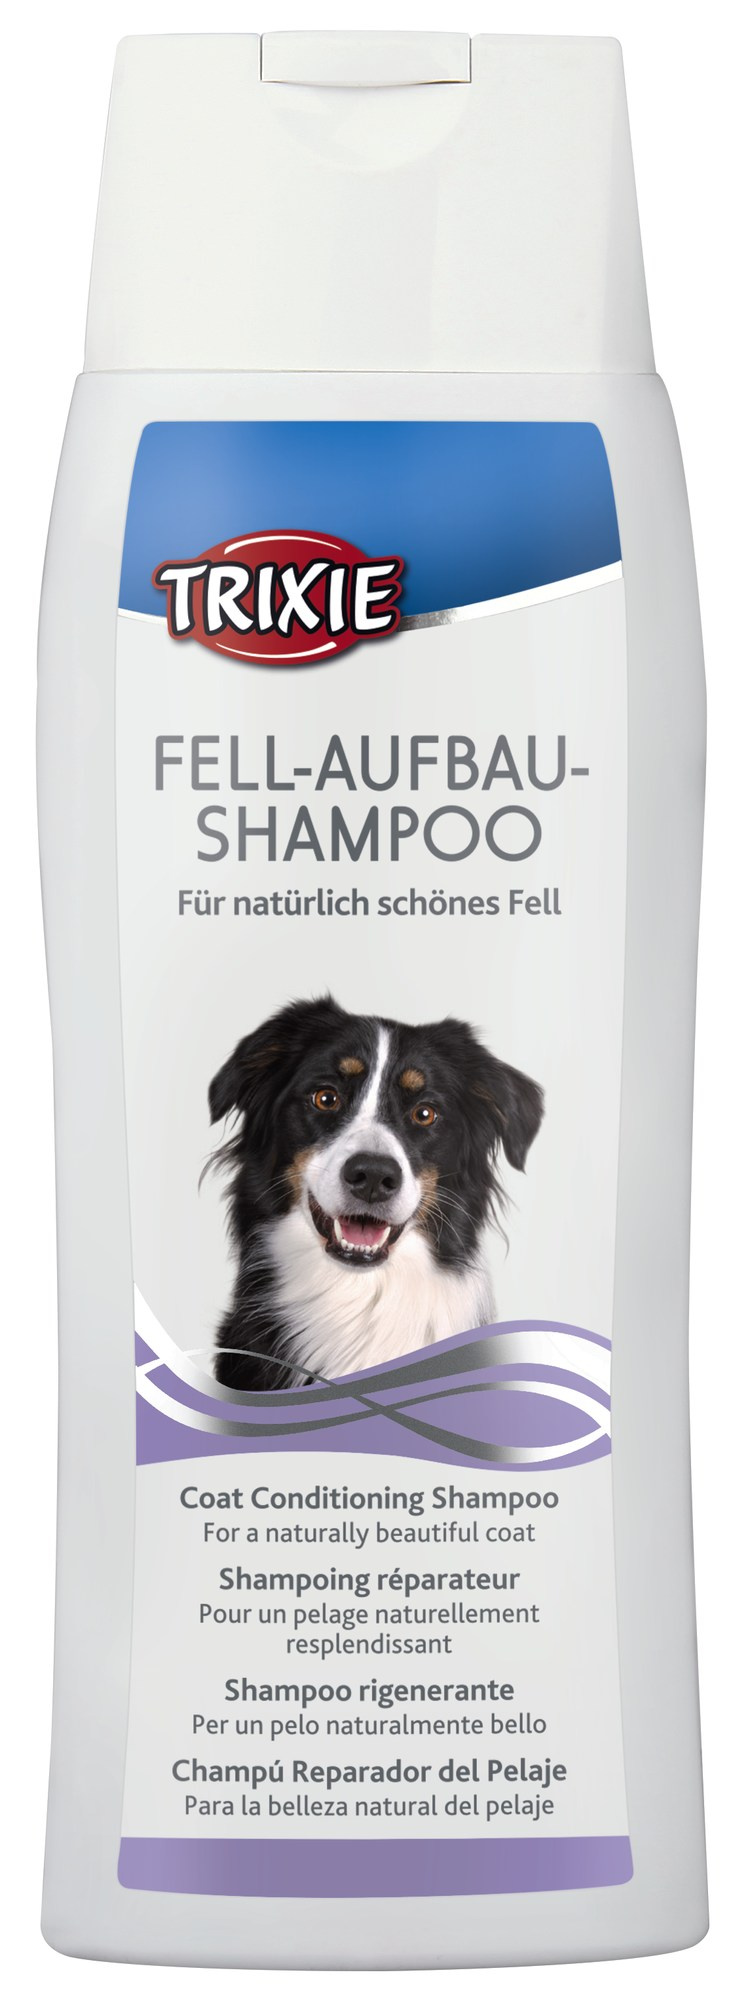 Fell-Aufbau-Shampoo